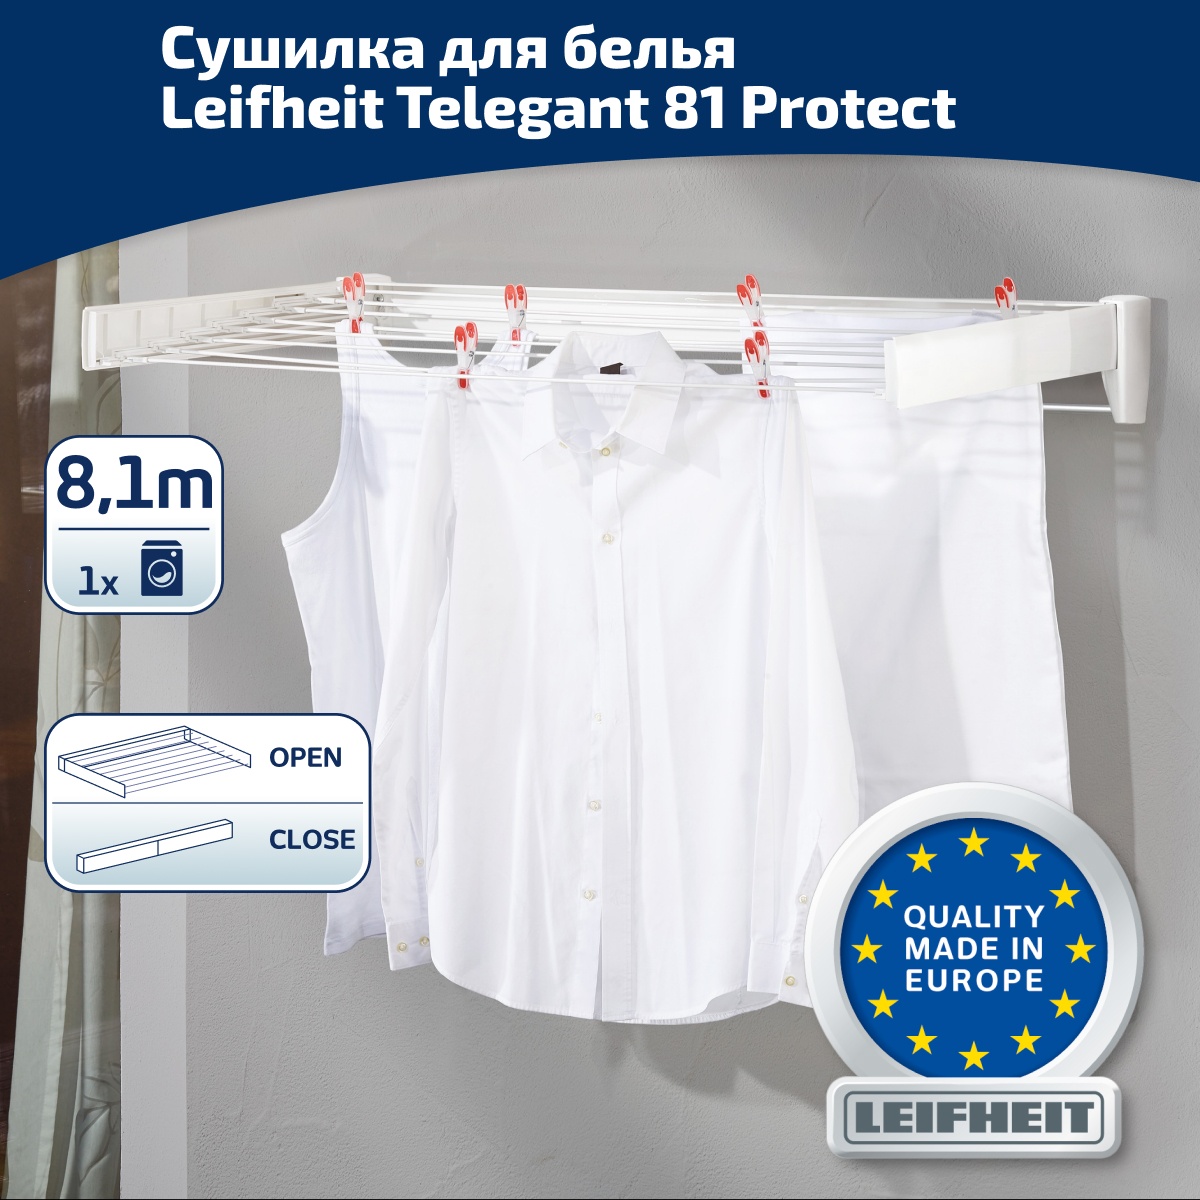 Сушилка для белья настенная Leifheit Telegant 81 Protect Plus, цвет белый утюг tefal smart protect plus fv 6870